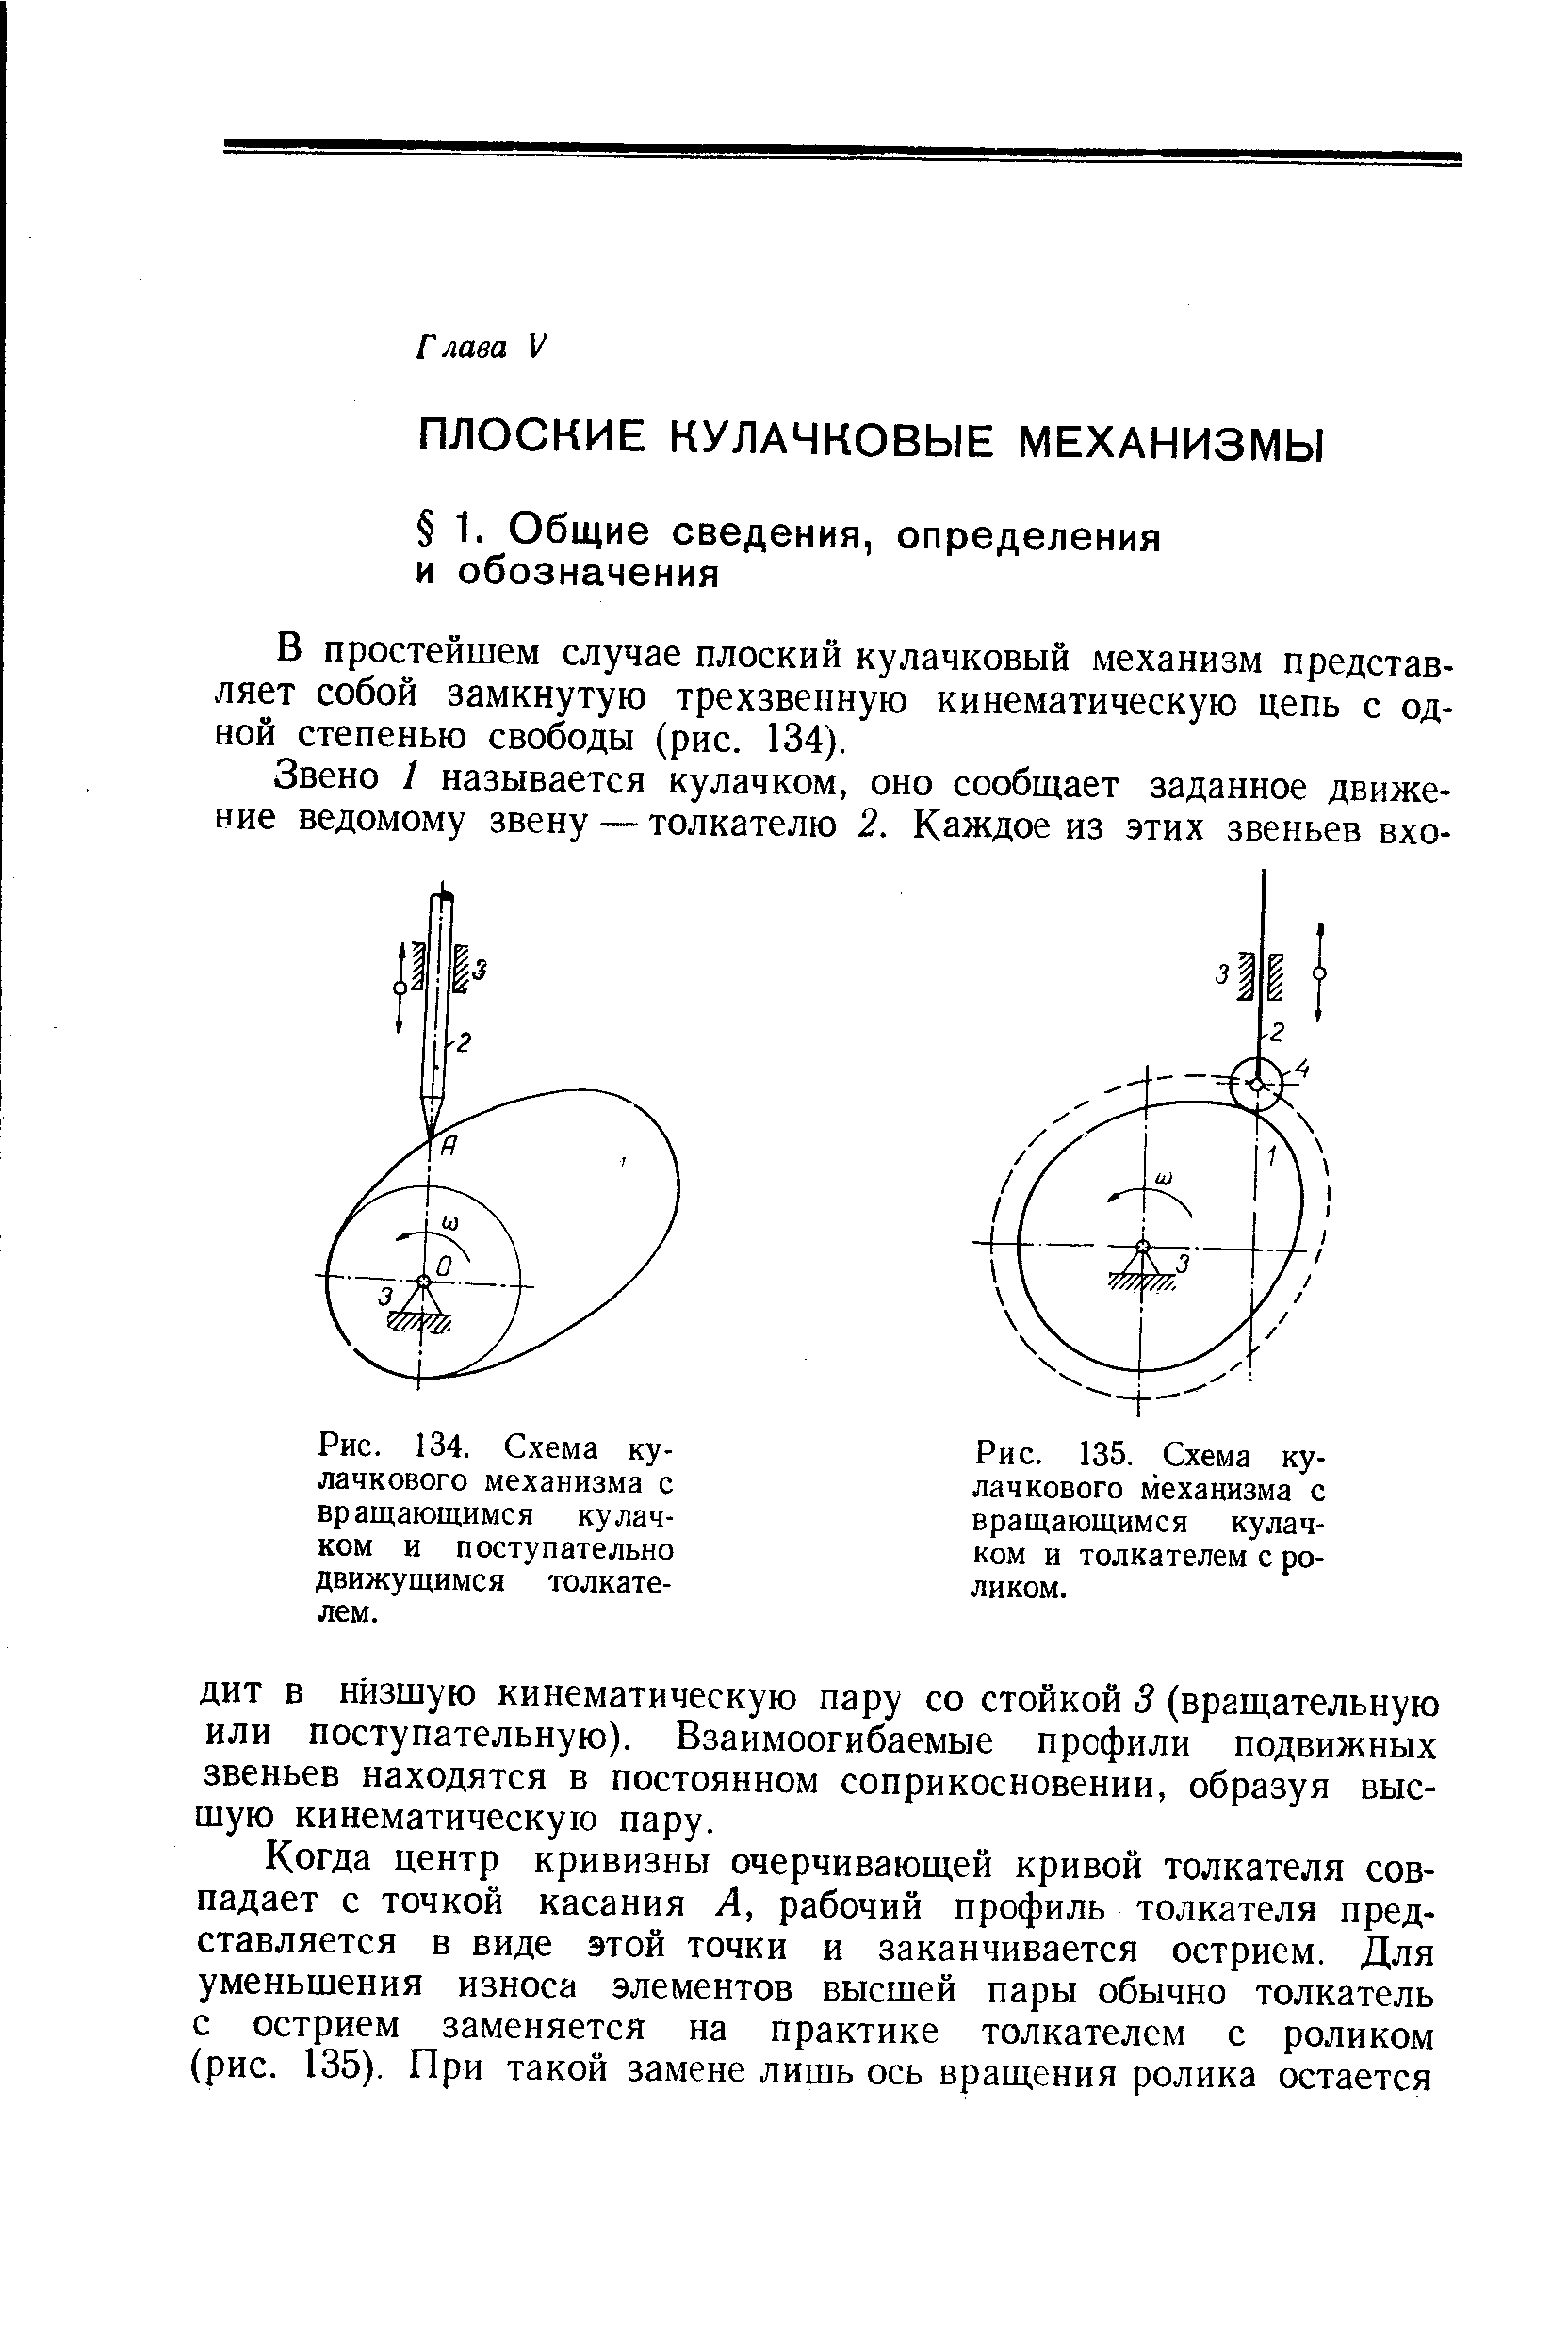 Рис. 135. <a href="/info/503443">Схема кулачкового механизма</a> с вращающимся кулачком и толкателем с роликом.
